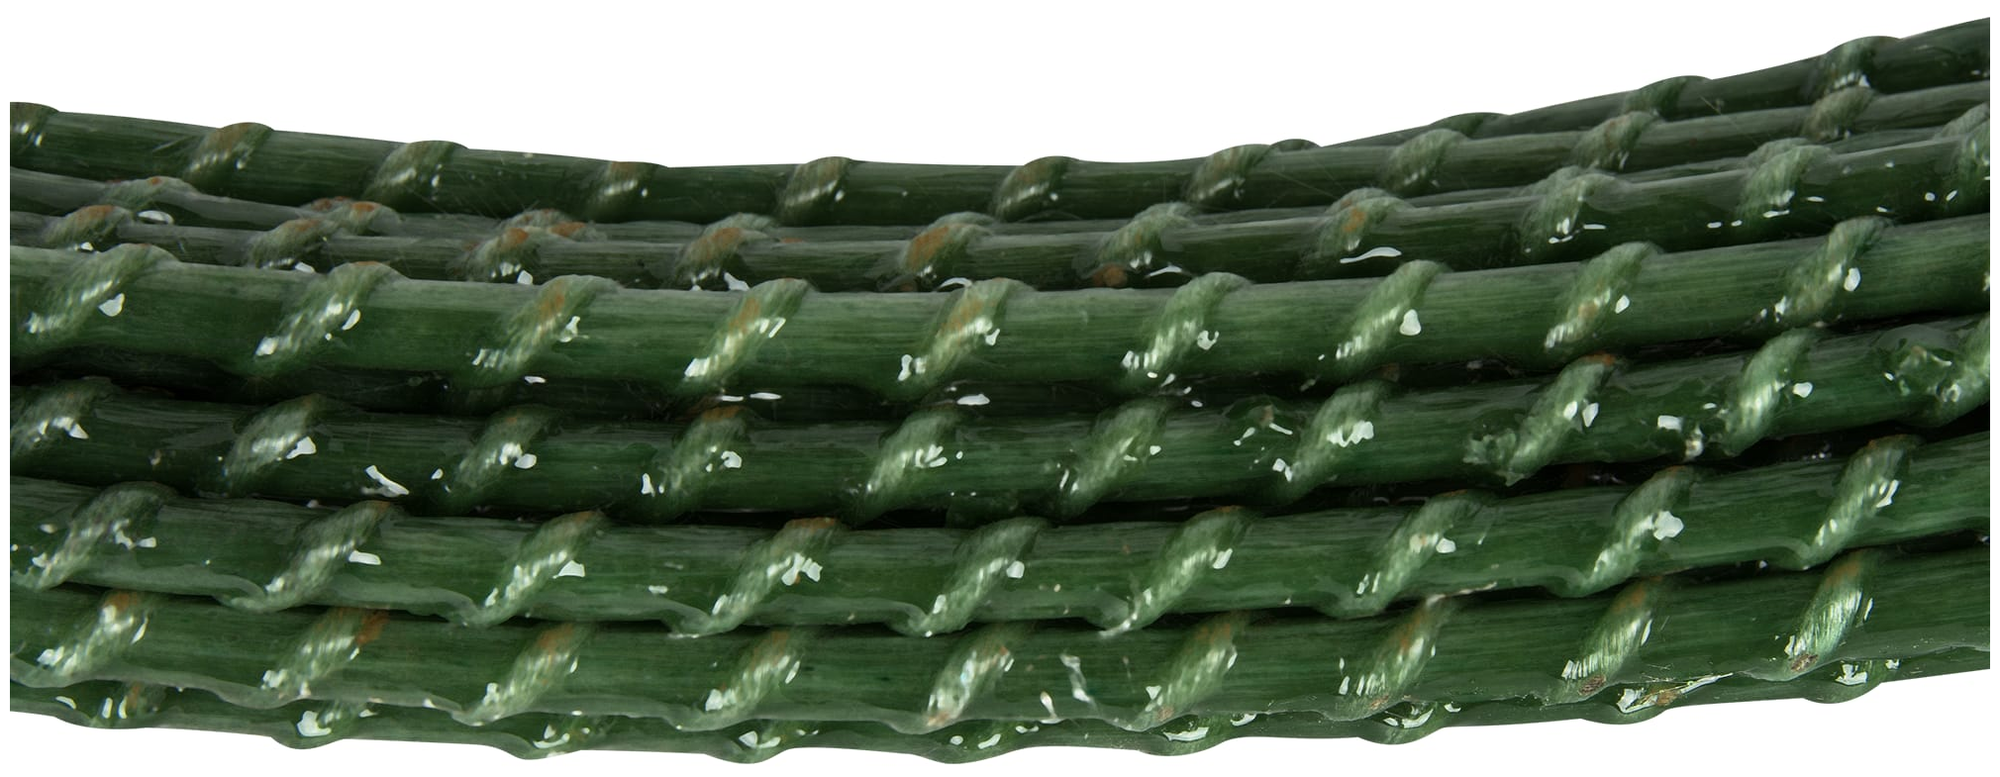 Колышки садовые CompositArm, длина 60 см, диаметр 8 мм, зеленые, 20 шт в упаковке - фотография № 6